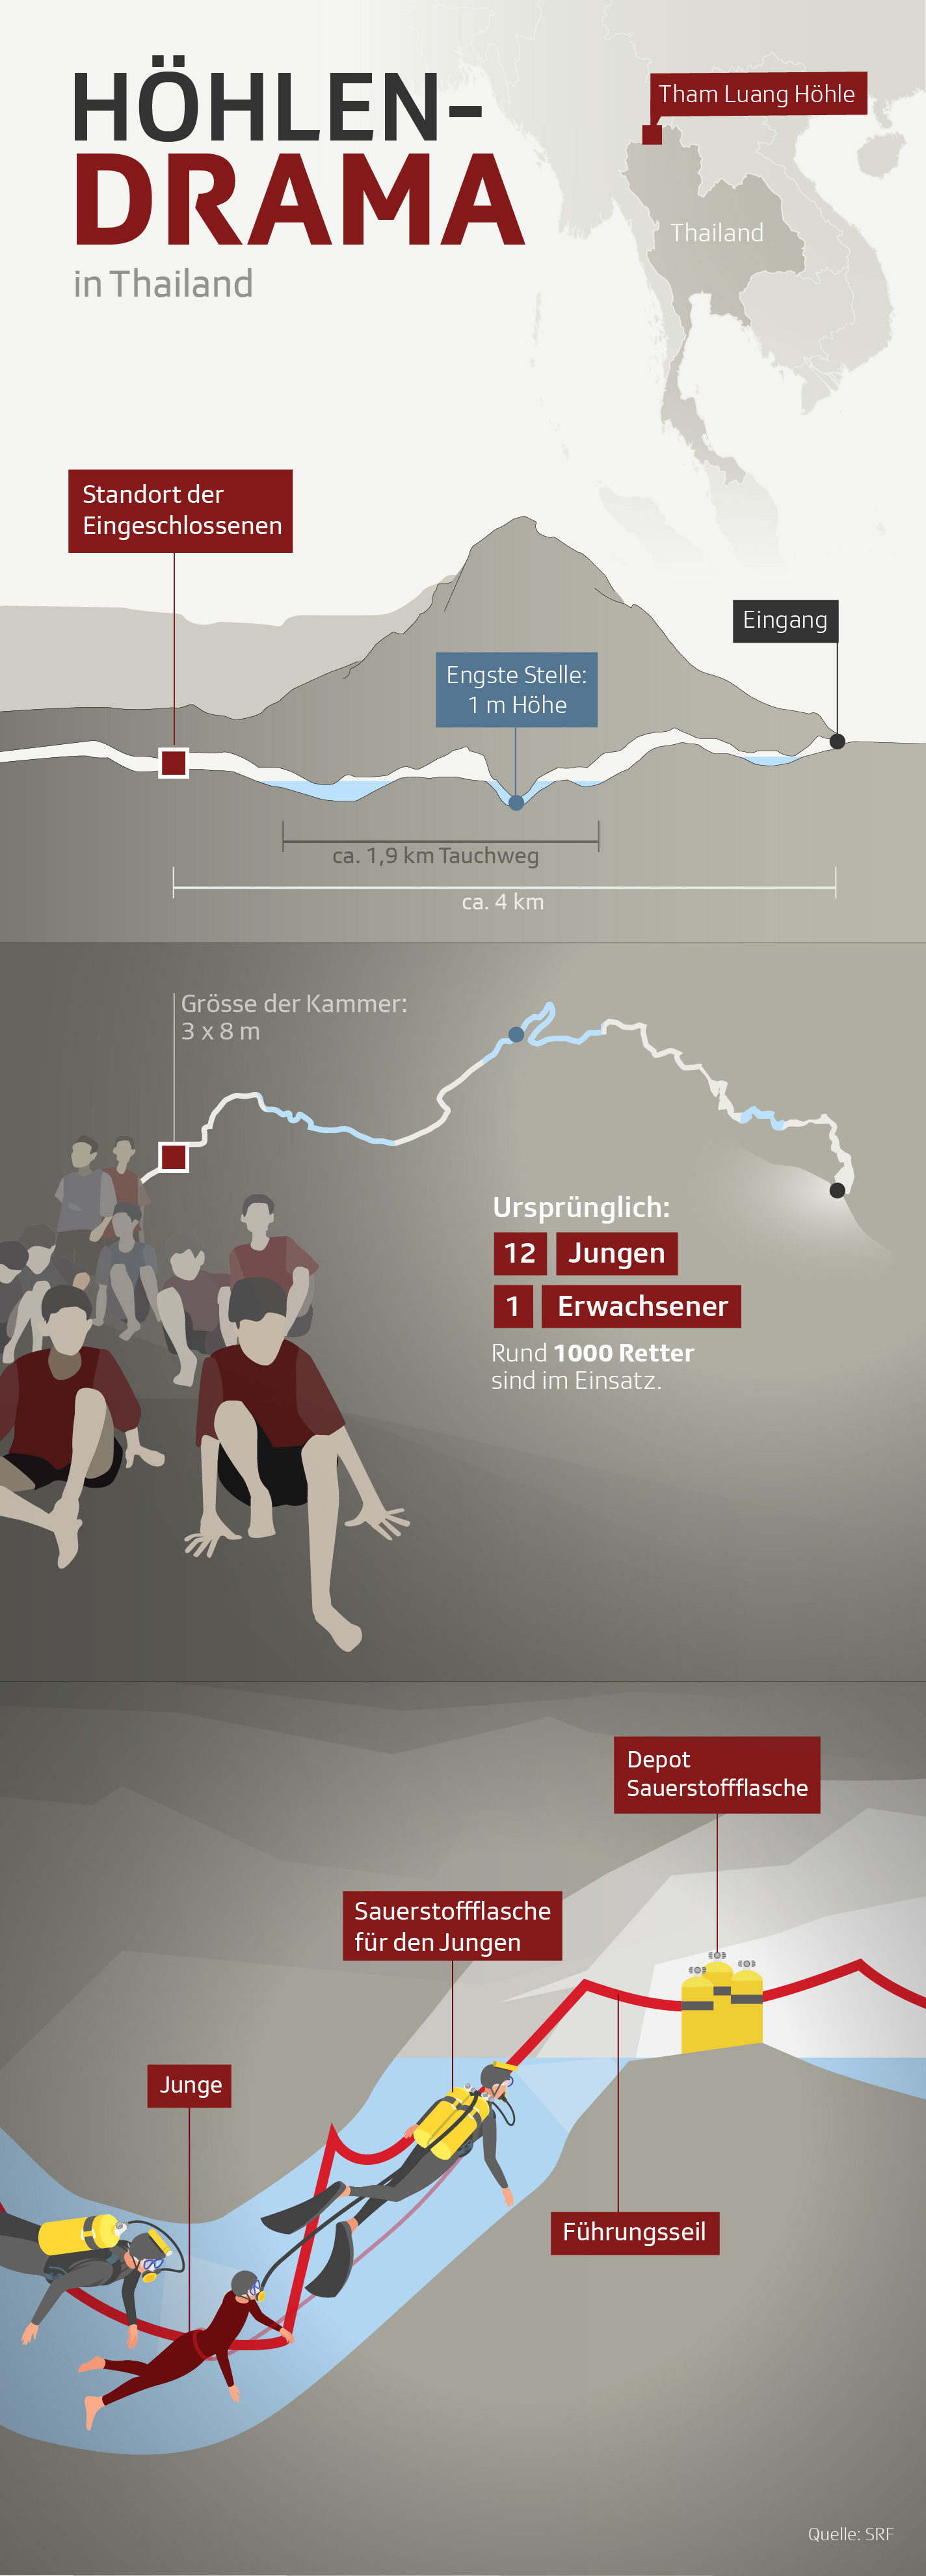 Grafik zeigt Verlauf der Höhle in Thailand und weitere Fakten